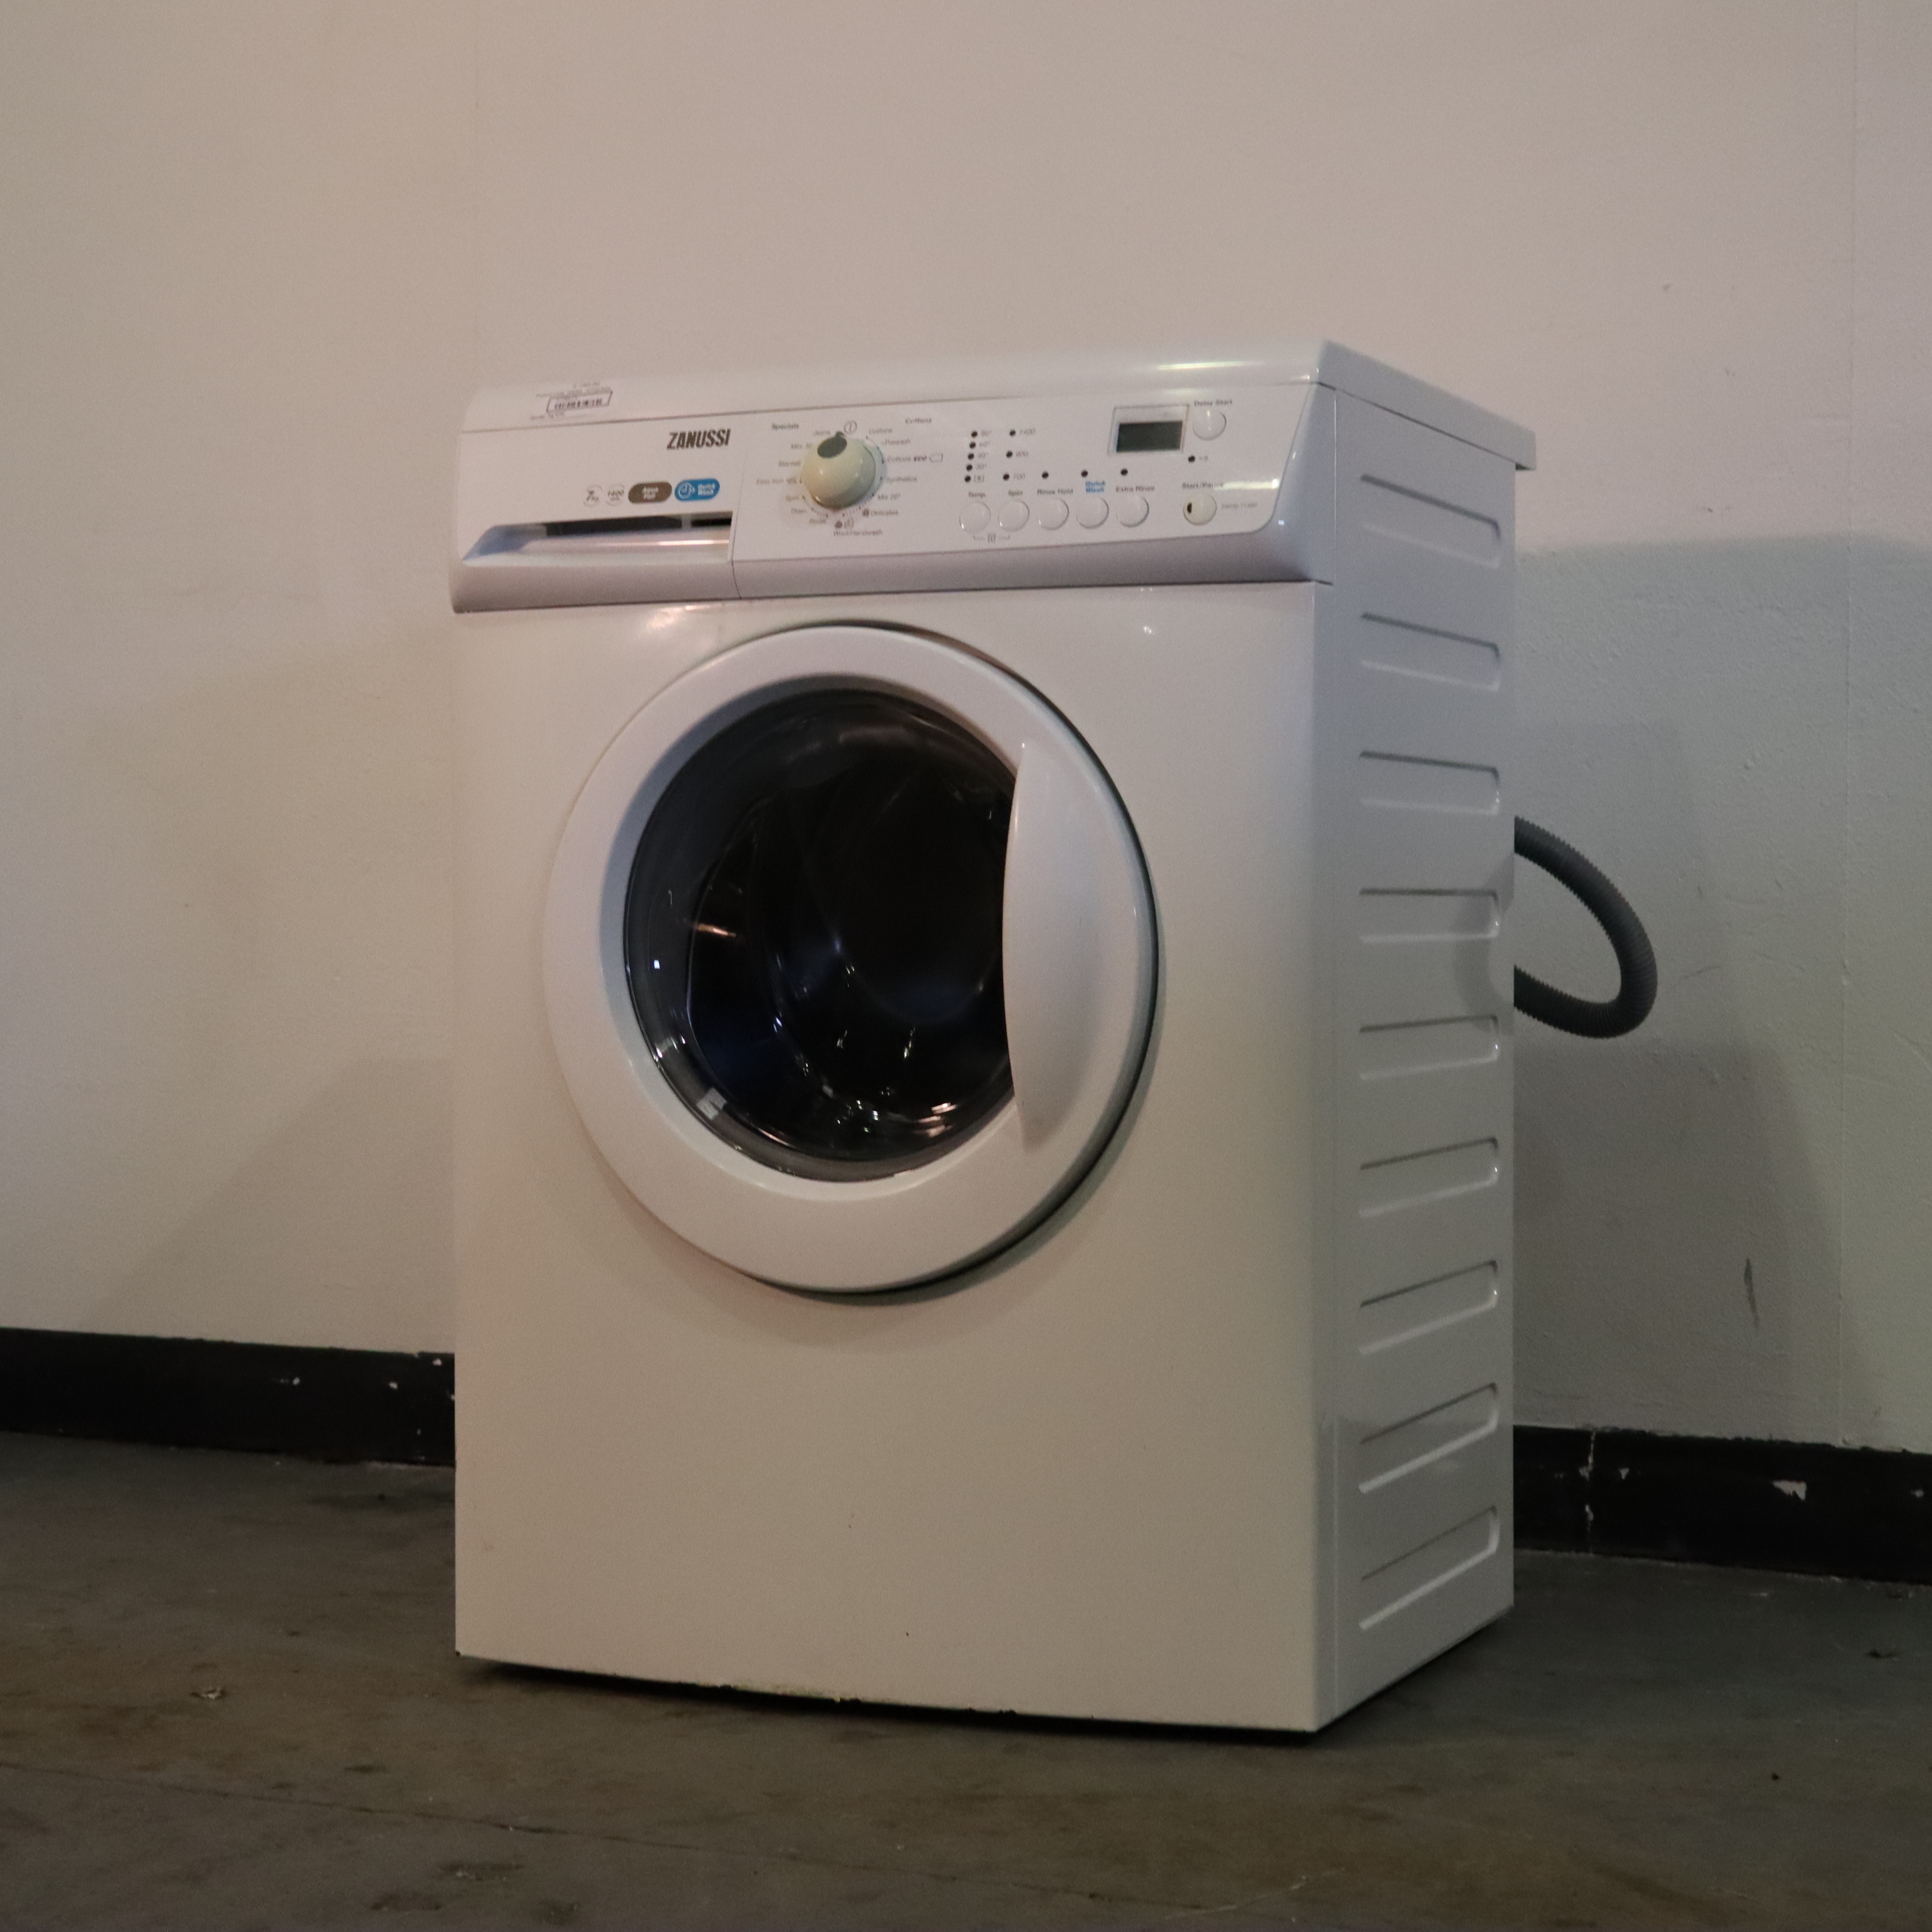 Zanussi 7kg Washing Machine